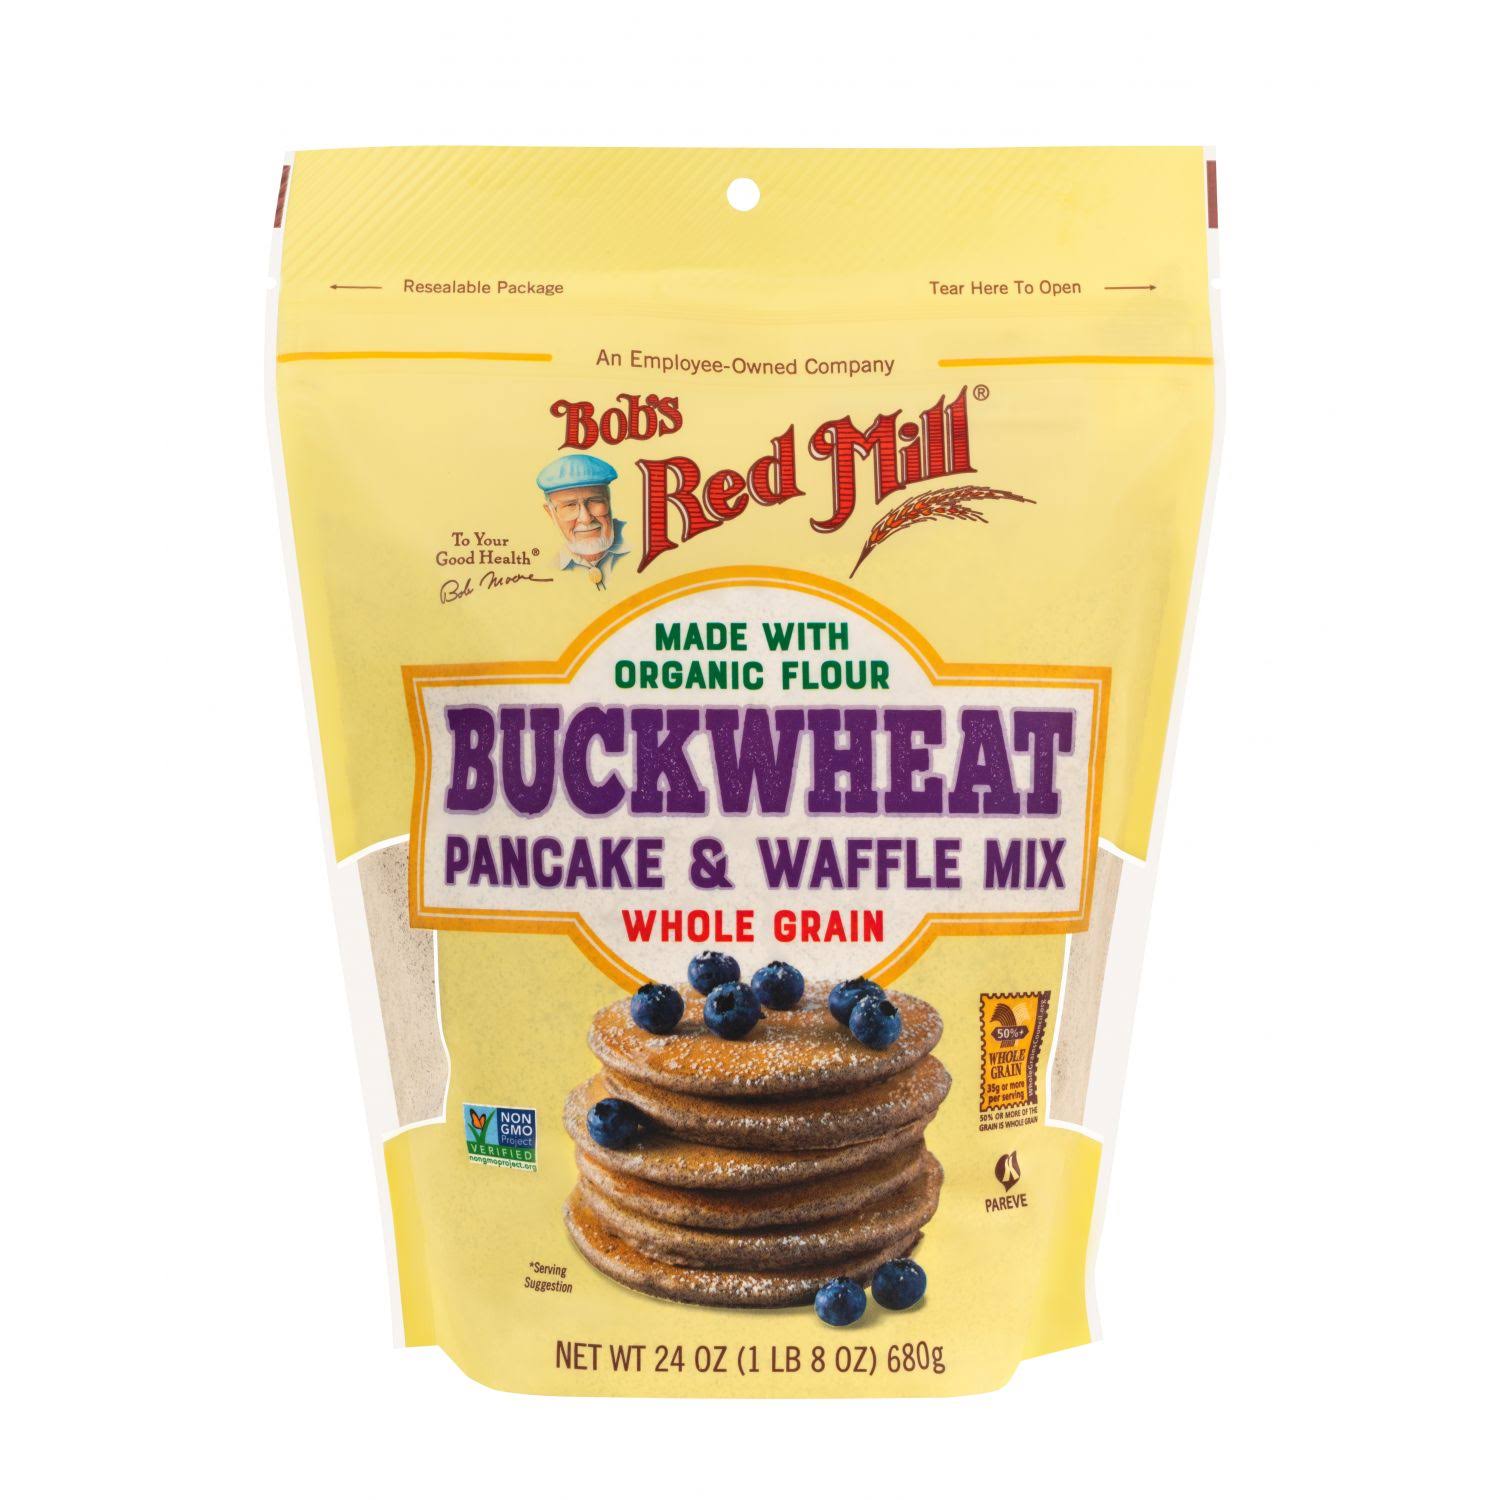 Bob's Red Mill Pancake & Waffle Mix, Buckwheat, Whole Grain - 24 oz